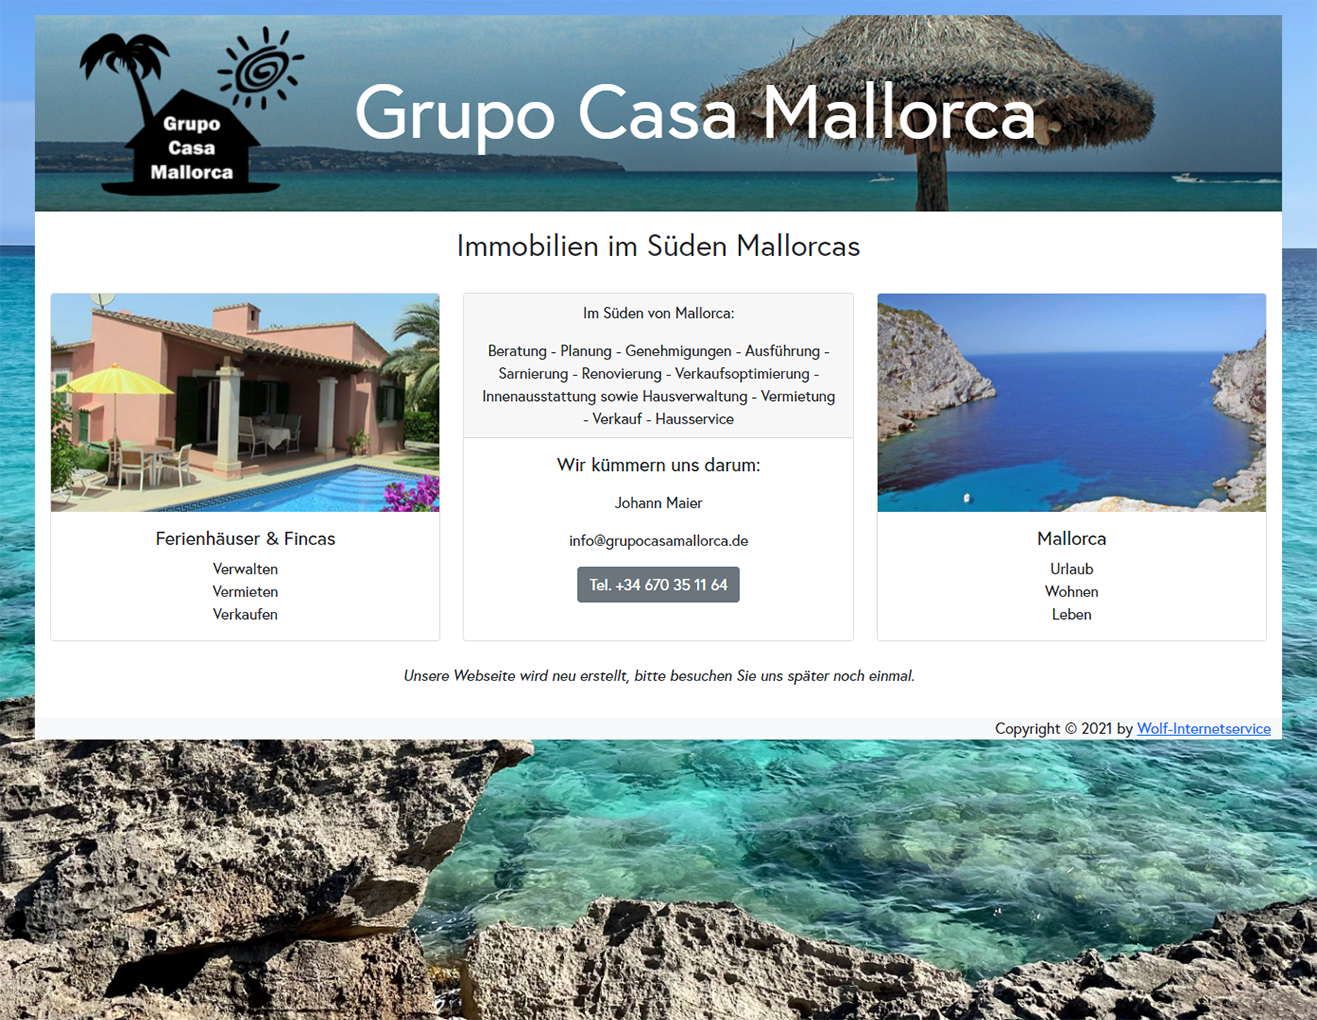 Grupo Casa Mallorca